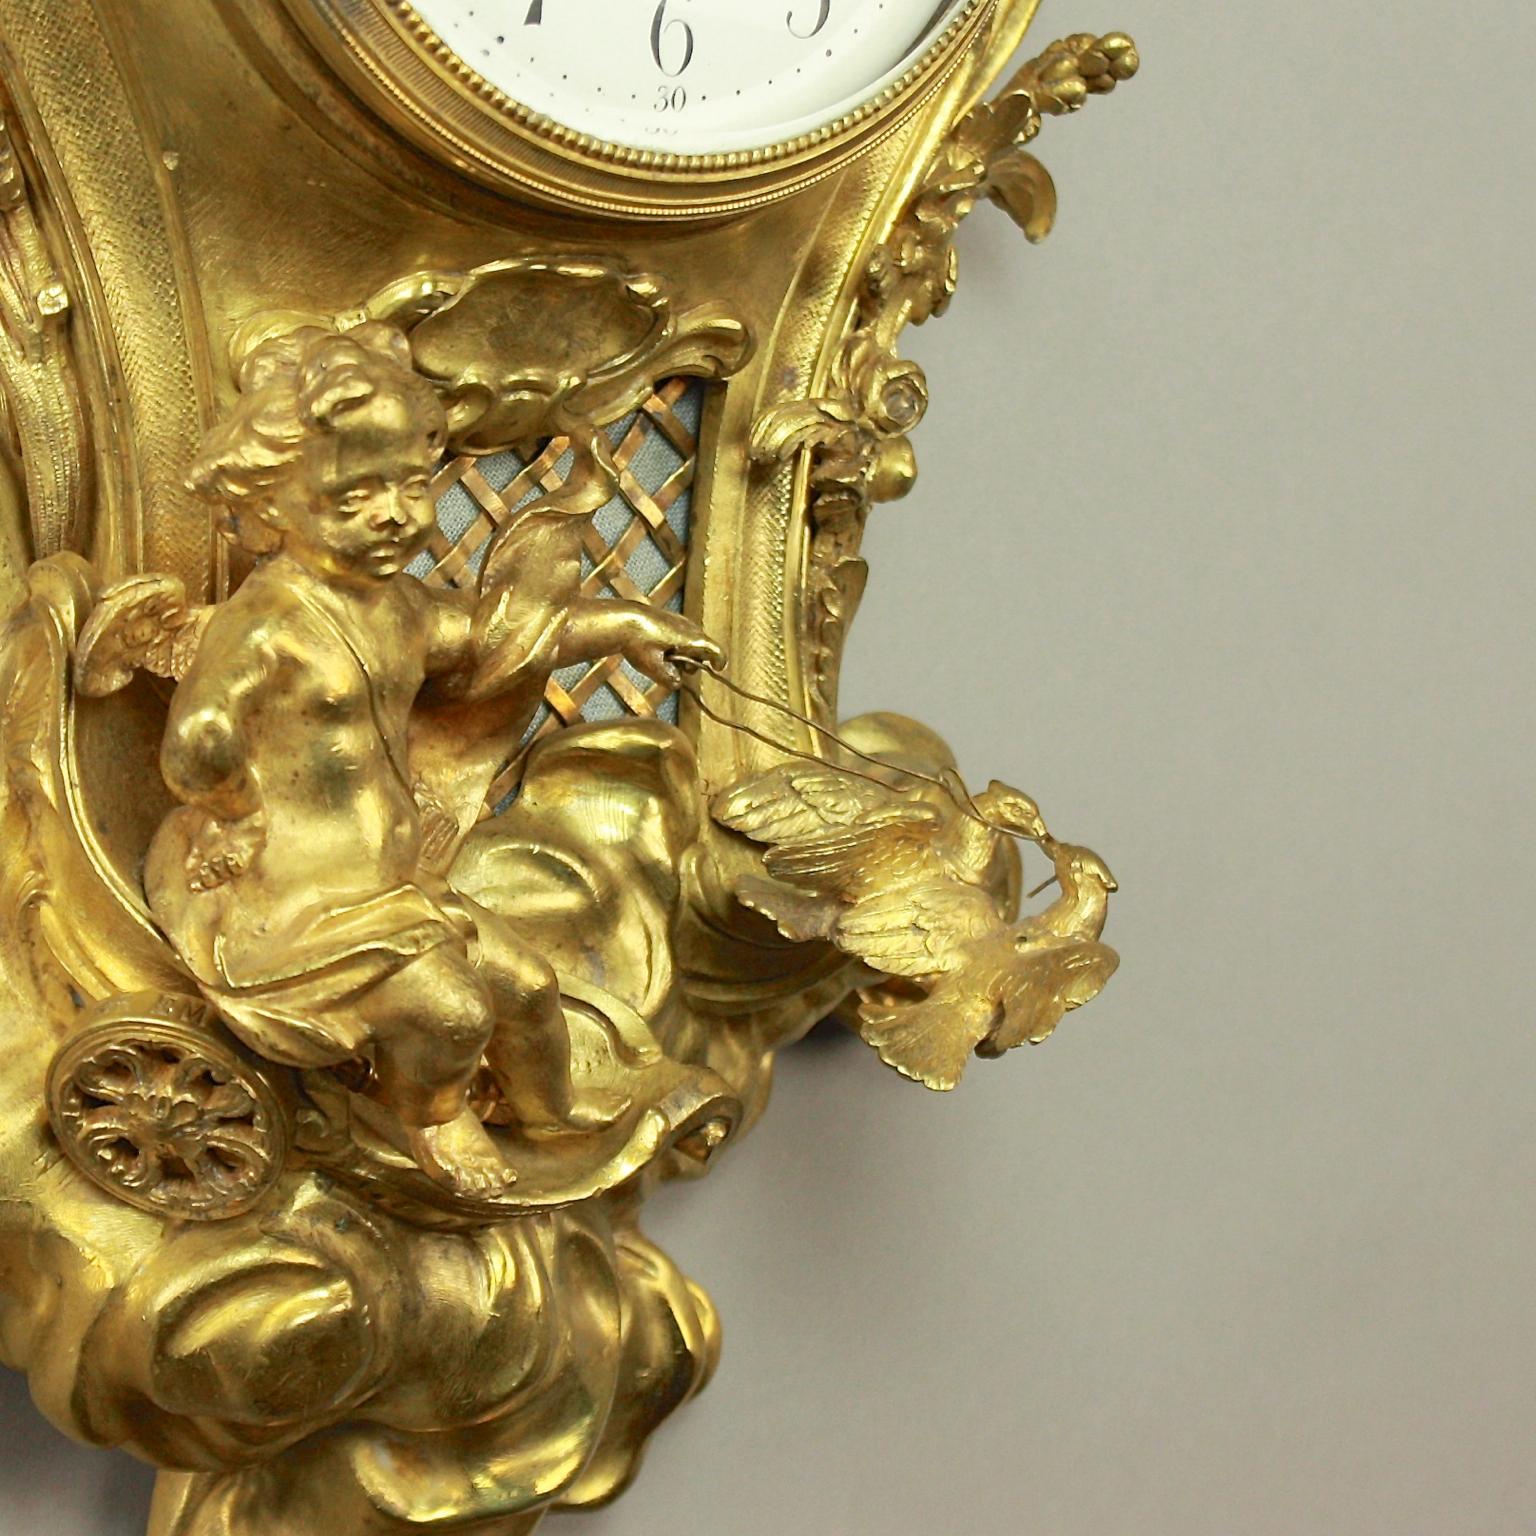 French 19th Century Louis XV Gilt Bronze Amor Cartel Clock, Manner of Caffieri (19. Jahrhundert)